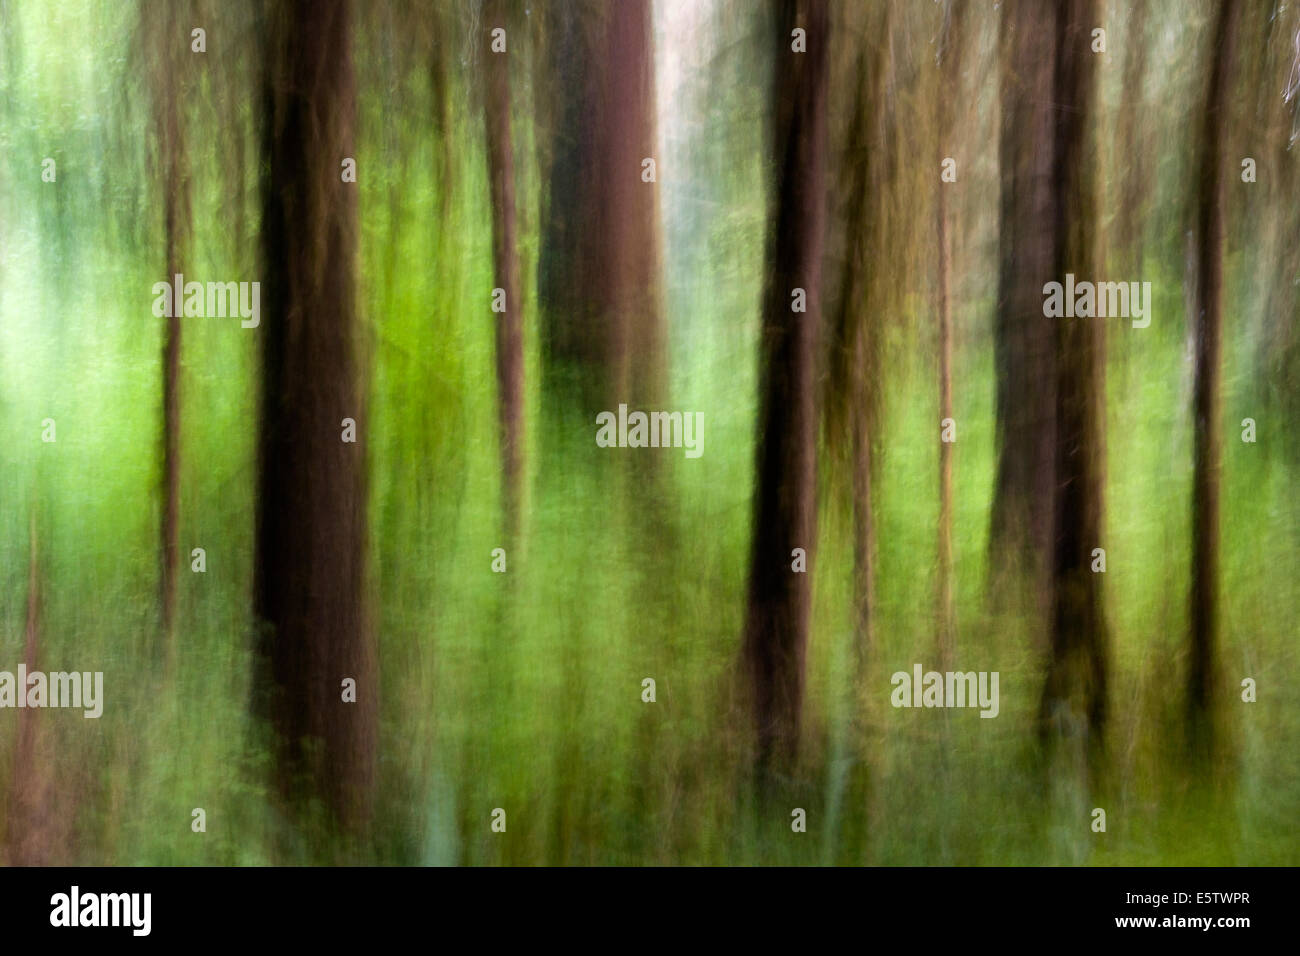 Immagine astratta di Hoh Rainforest - Parco nazionale di Olympic, vicino a forche, Washington, Stati Uniti d'America Foto Stock